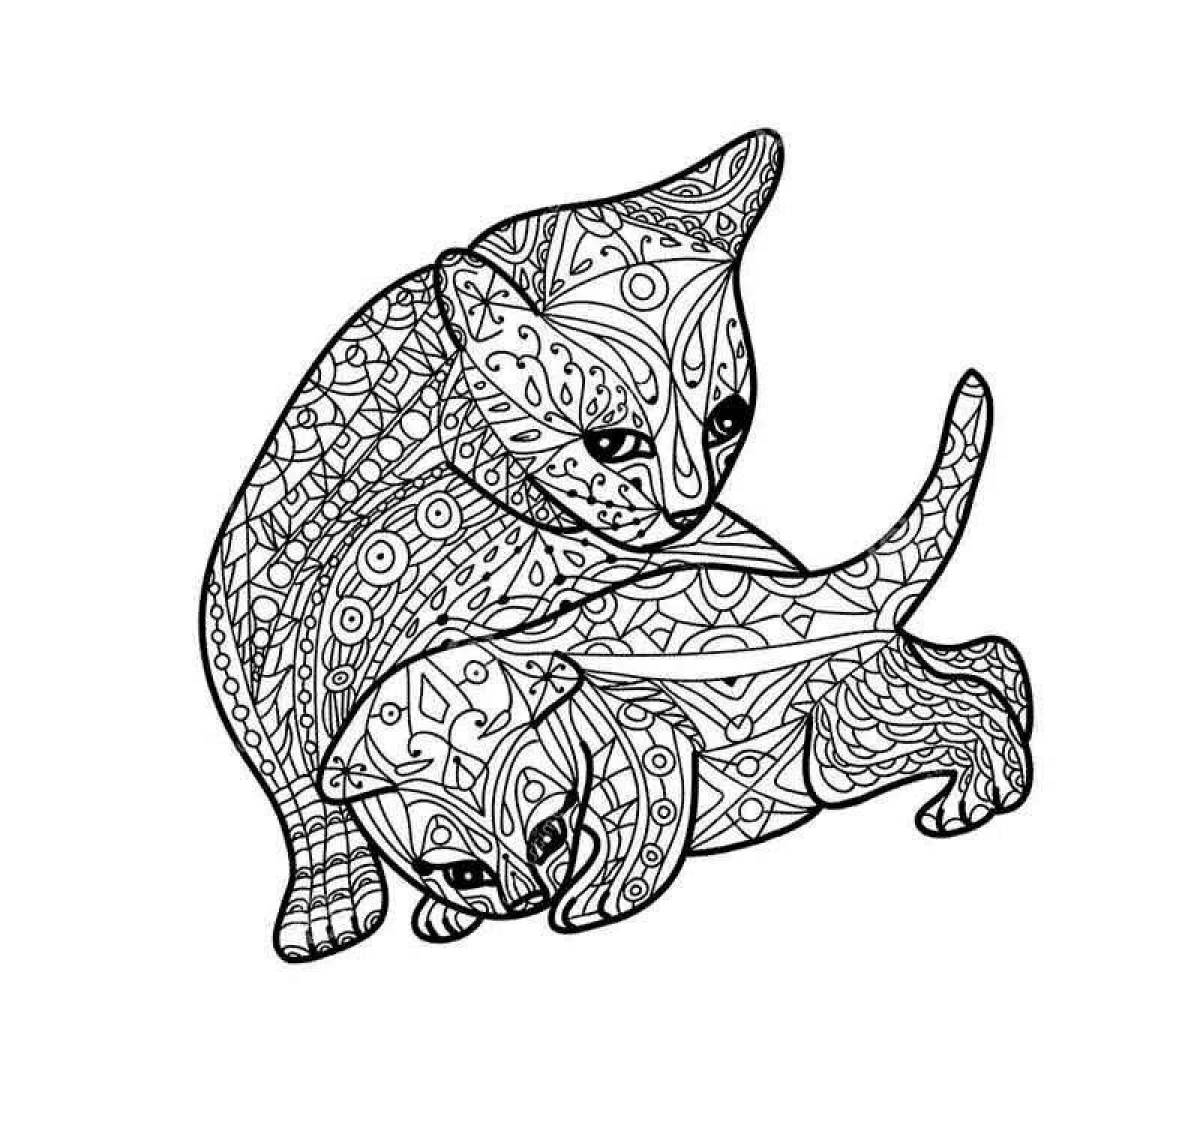 Остроумная раскраска сложная кошка